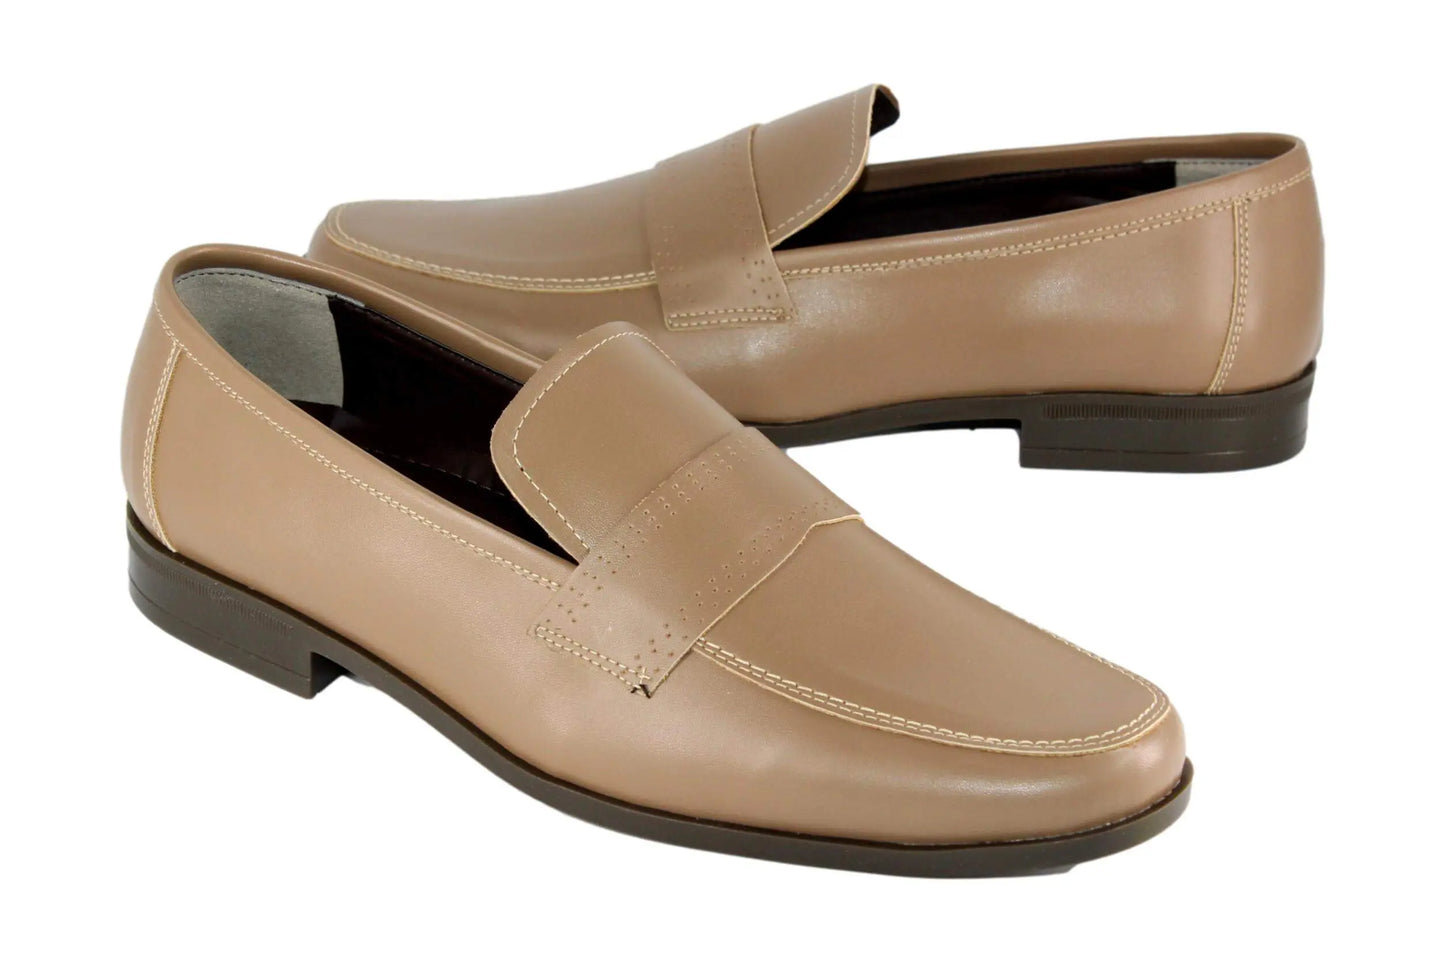 أنواع الحذاء | ShoeTypes حذاء رسمي كلاسيك إيطالي أنواع الحذاء - رسمي - كلاسيك